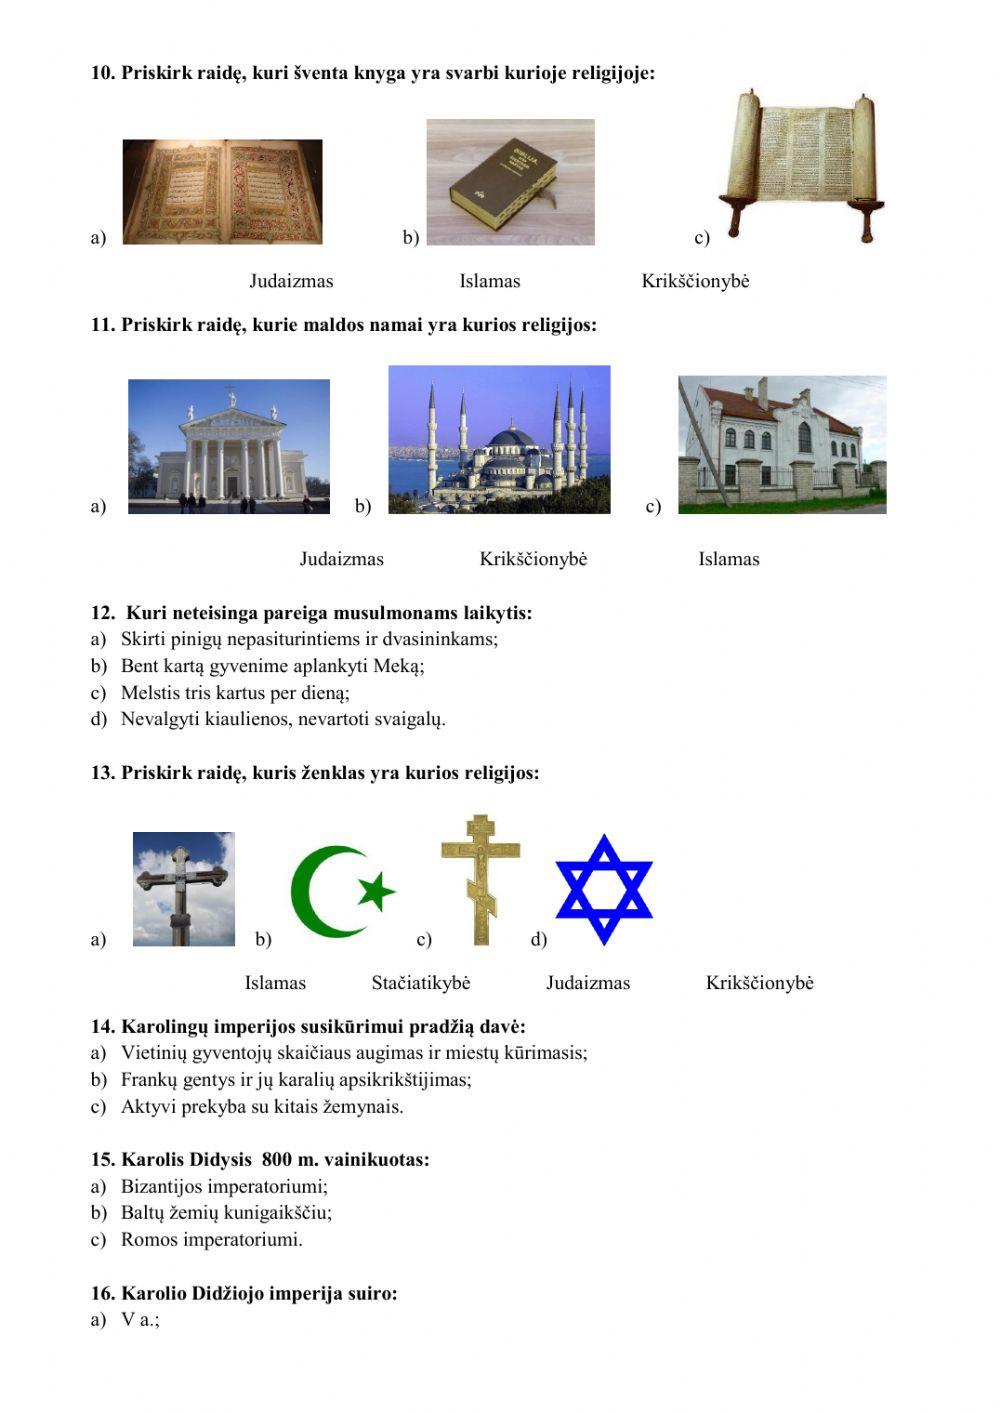 Bizantija.Islamas. K. Didysis.